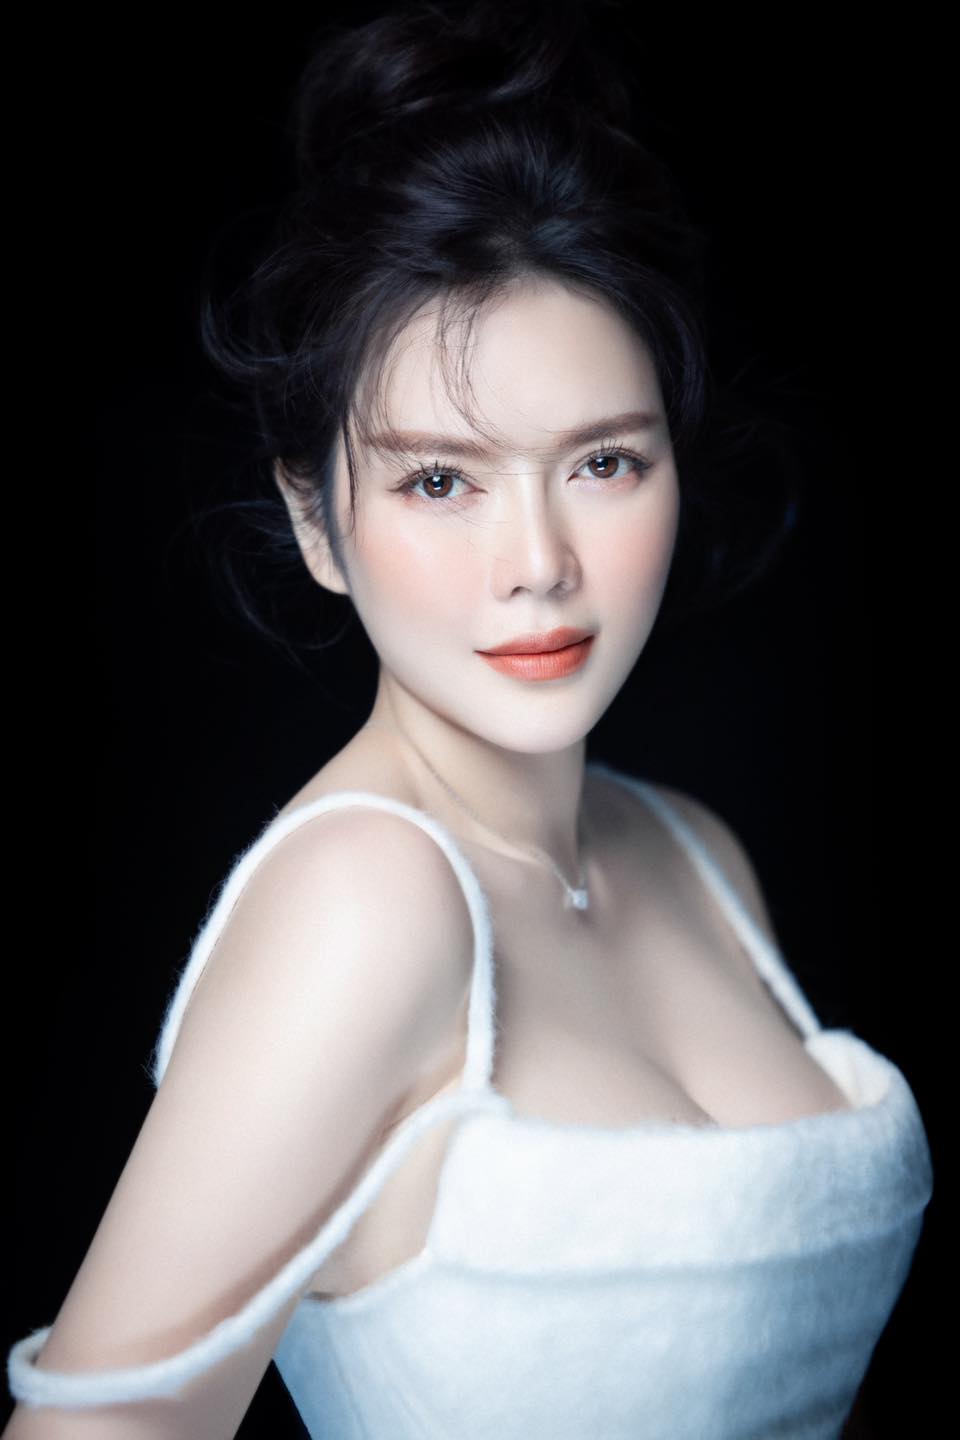 U40 vẫn là đệ nhất mỹ nhân phồn thực showbiz Việt, “nữ hoàng kim cương” có bí quyết gì? - 4